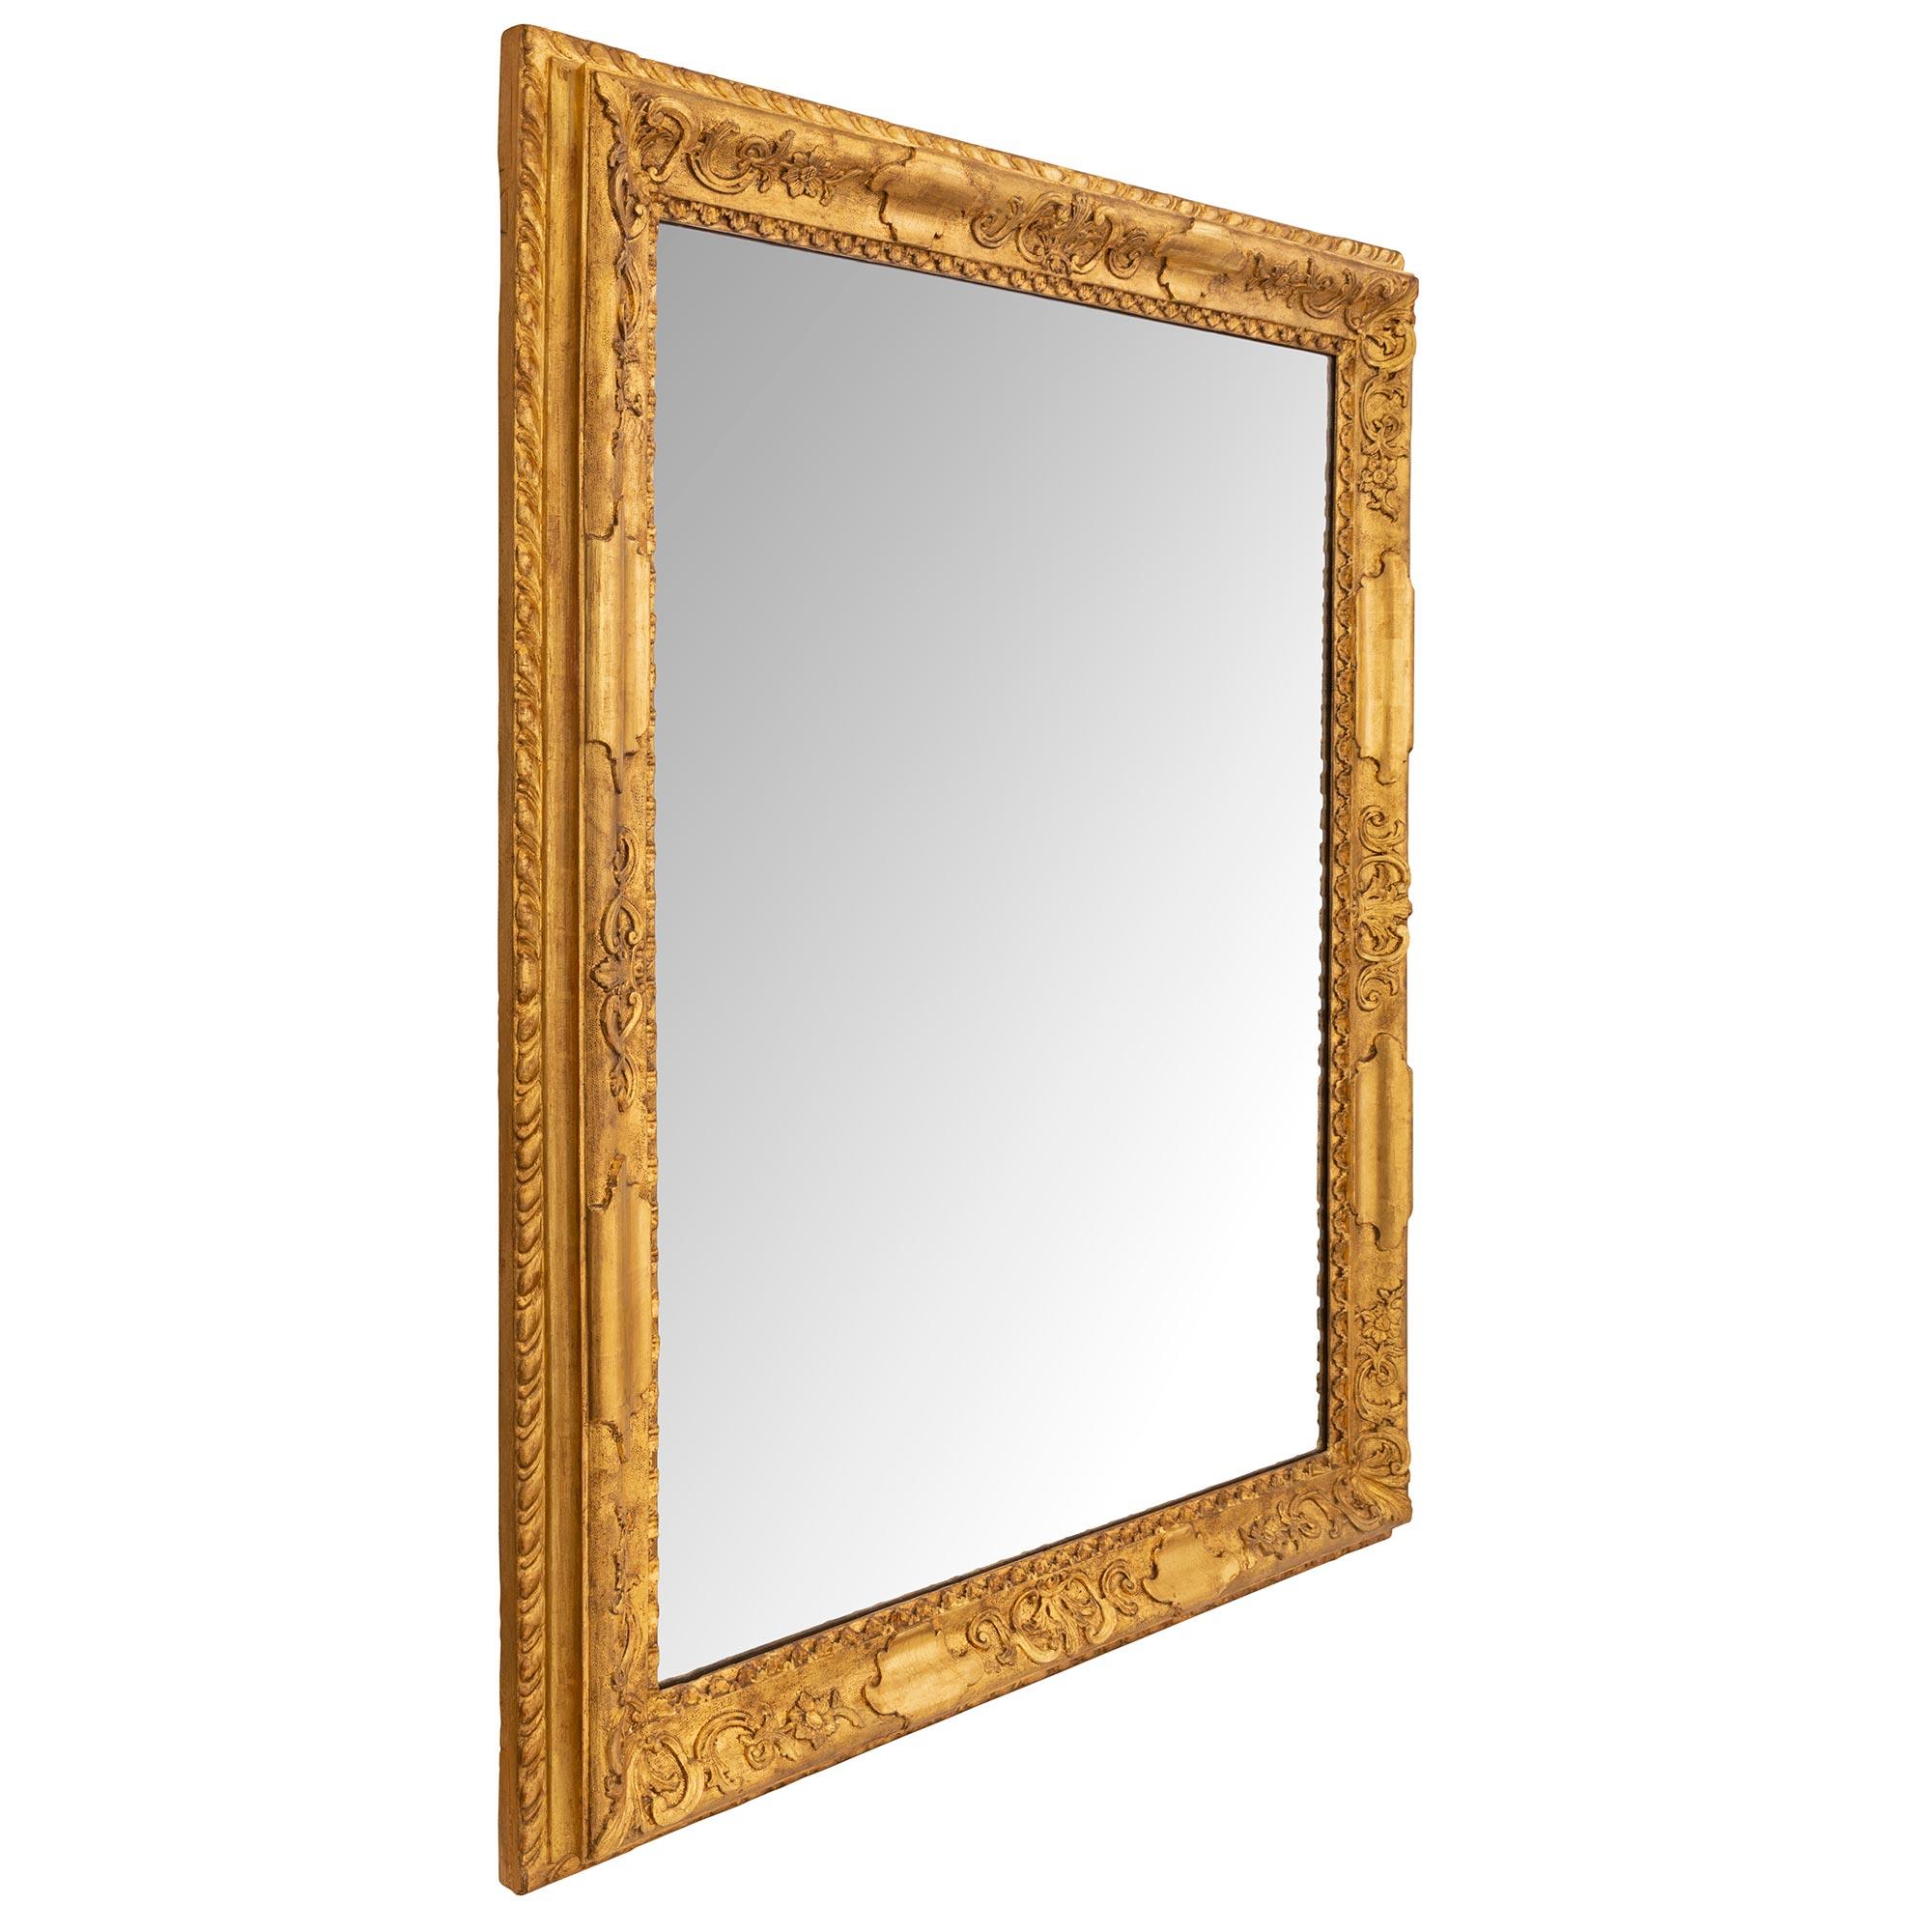 Un élégant miroir italien du 18ème siècle en bois doré de style Louis XIV. La plaque centrale du miroir est placée dans un magnifique cadre en bois doré moucheté avec des motifs feuillus finement détaillés et une bande enveloppante à godrons sur la